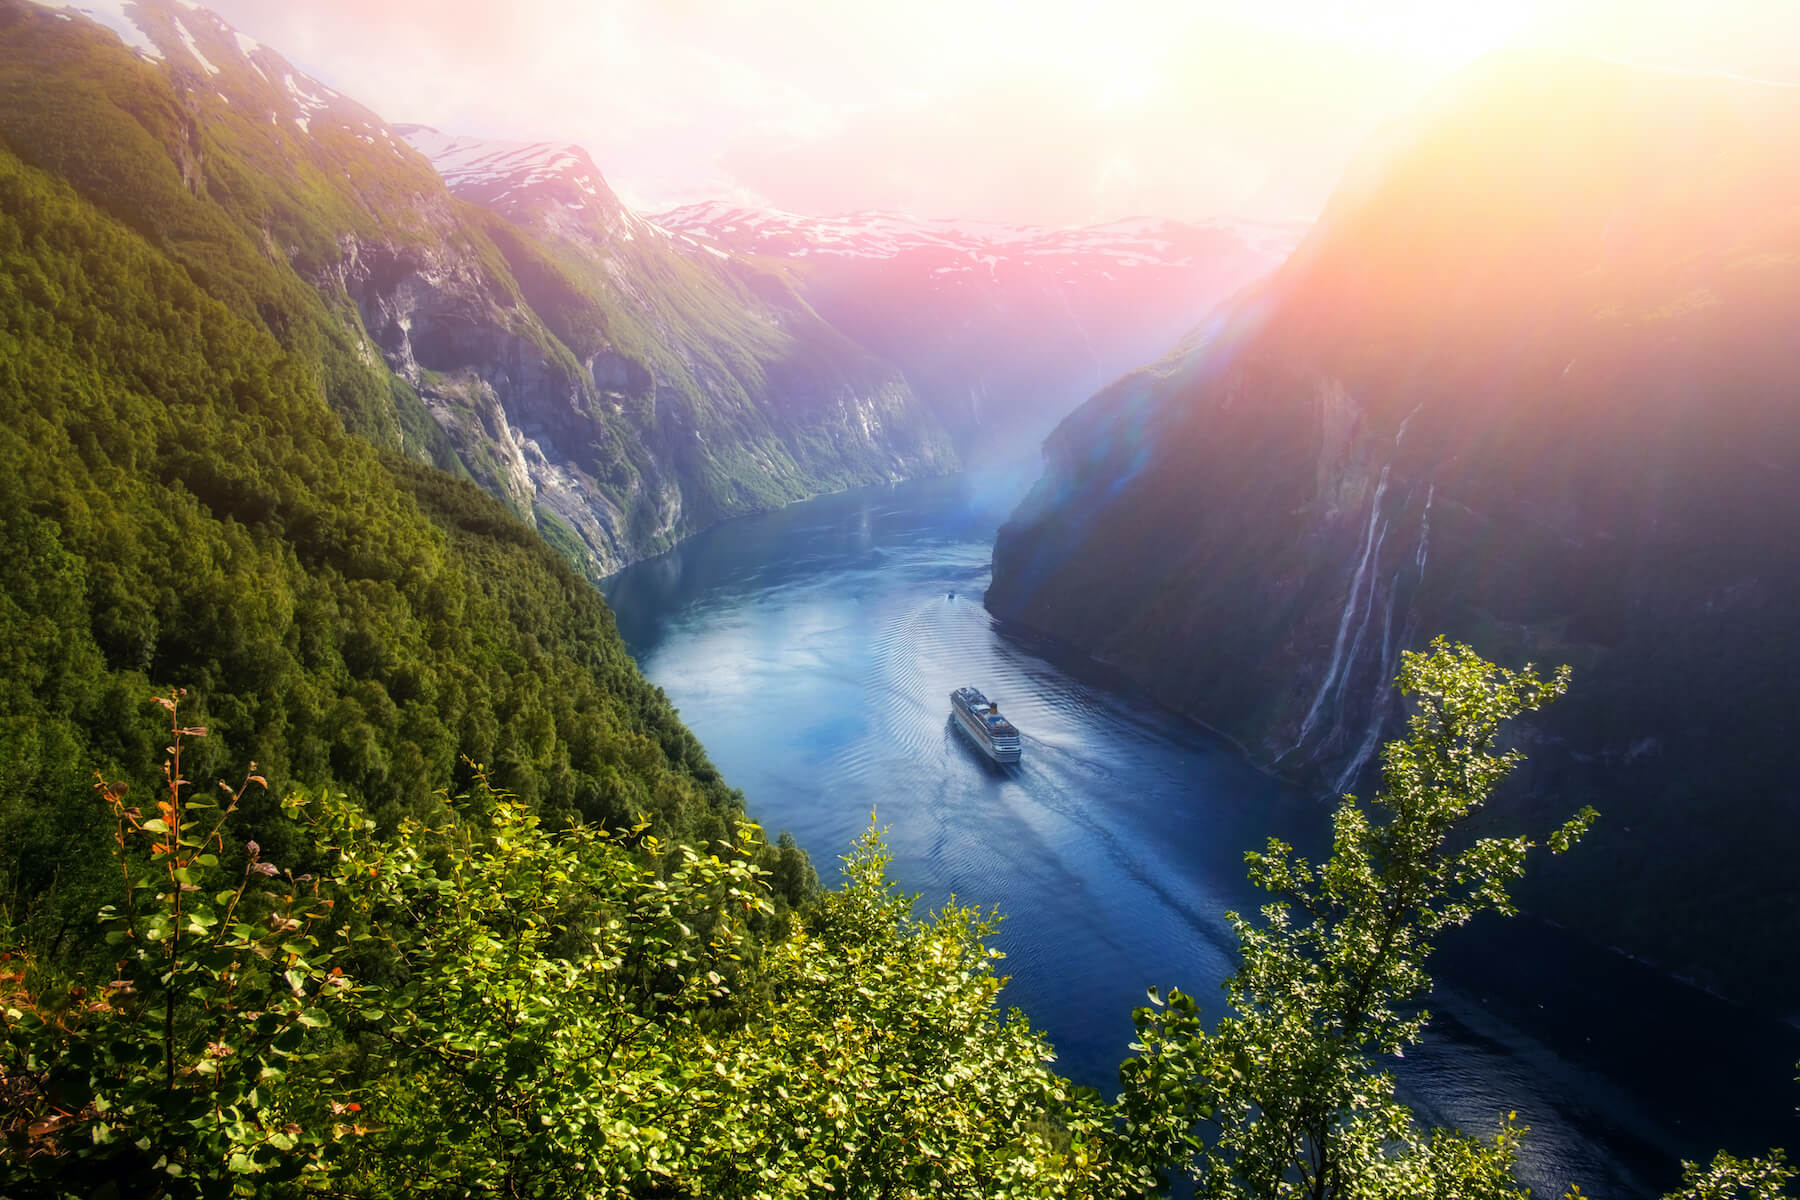 Crucero en un fiordo Noruego